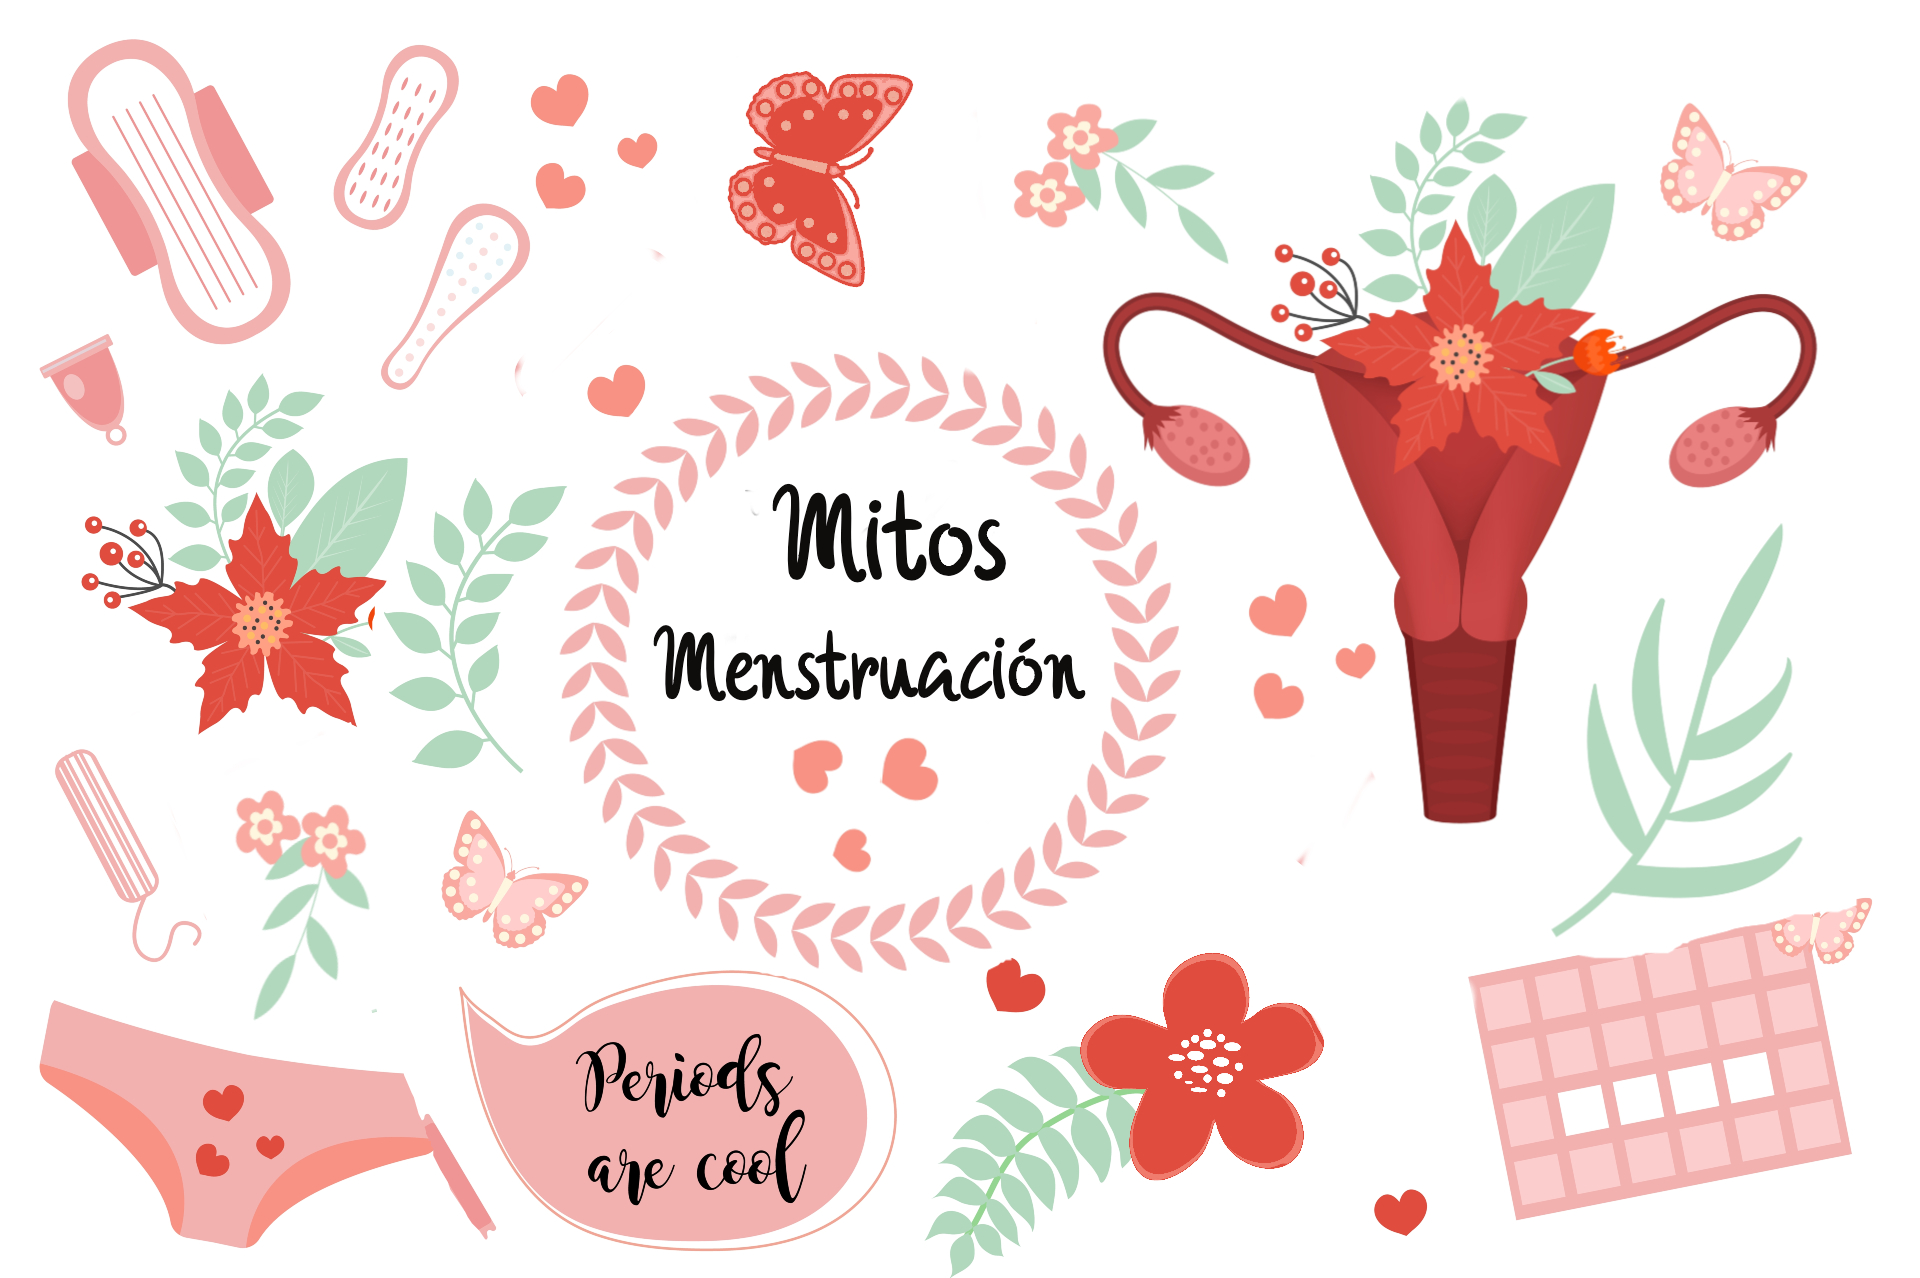 Mitos de la menstruación según la edad de la mujer